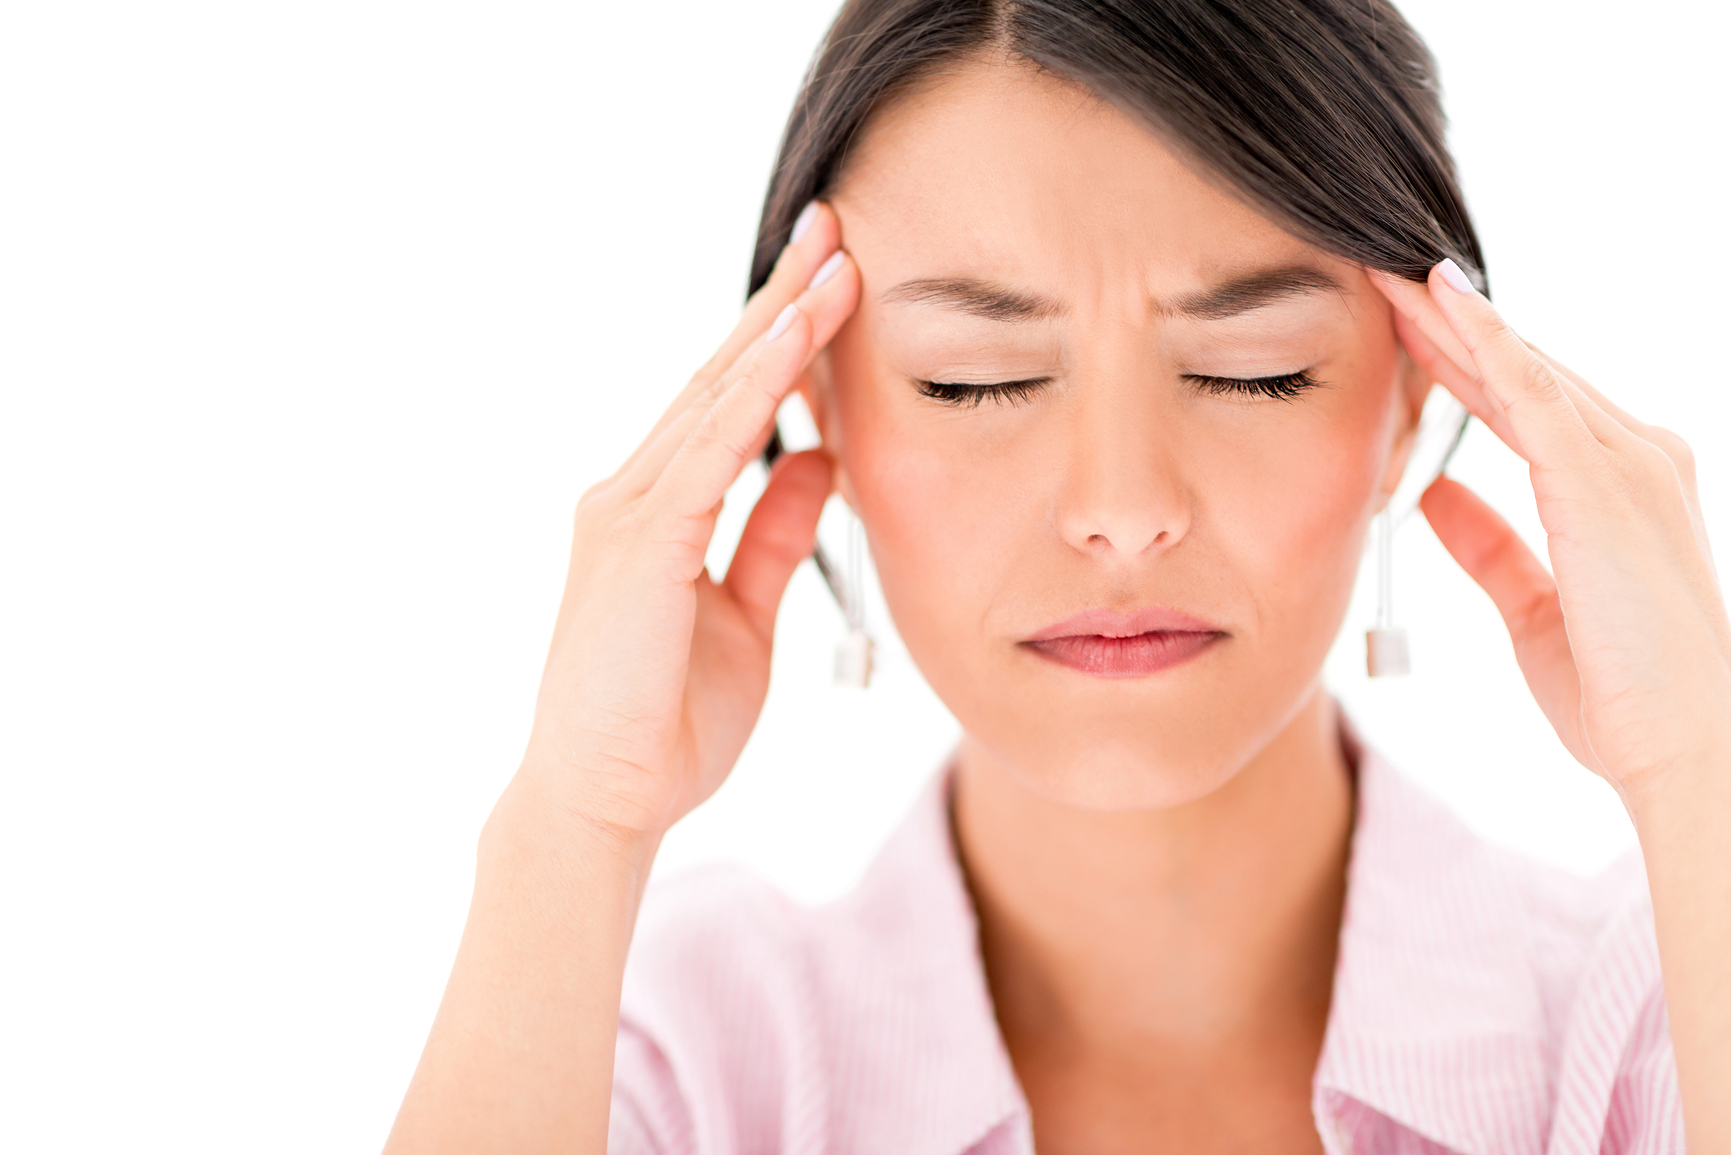 La migraña es dos veces más frecuente entre las mujeres que en los hombres debido a influencias hormonales.